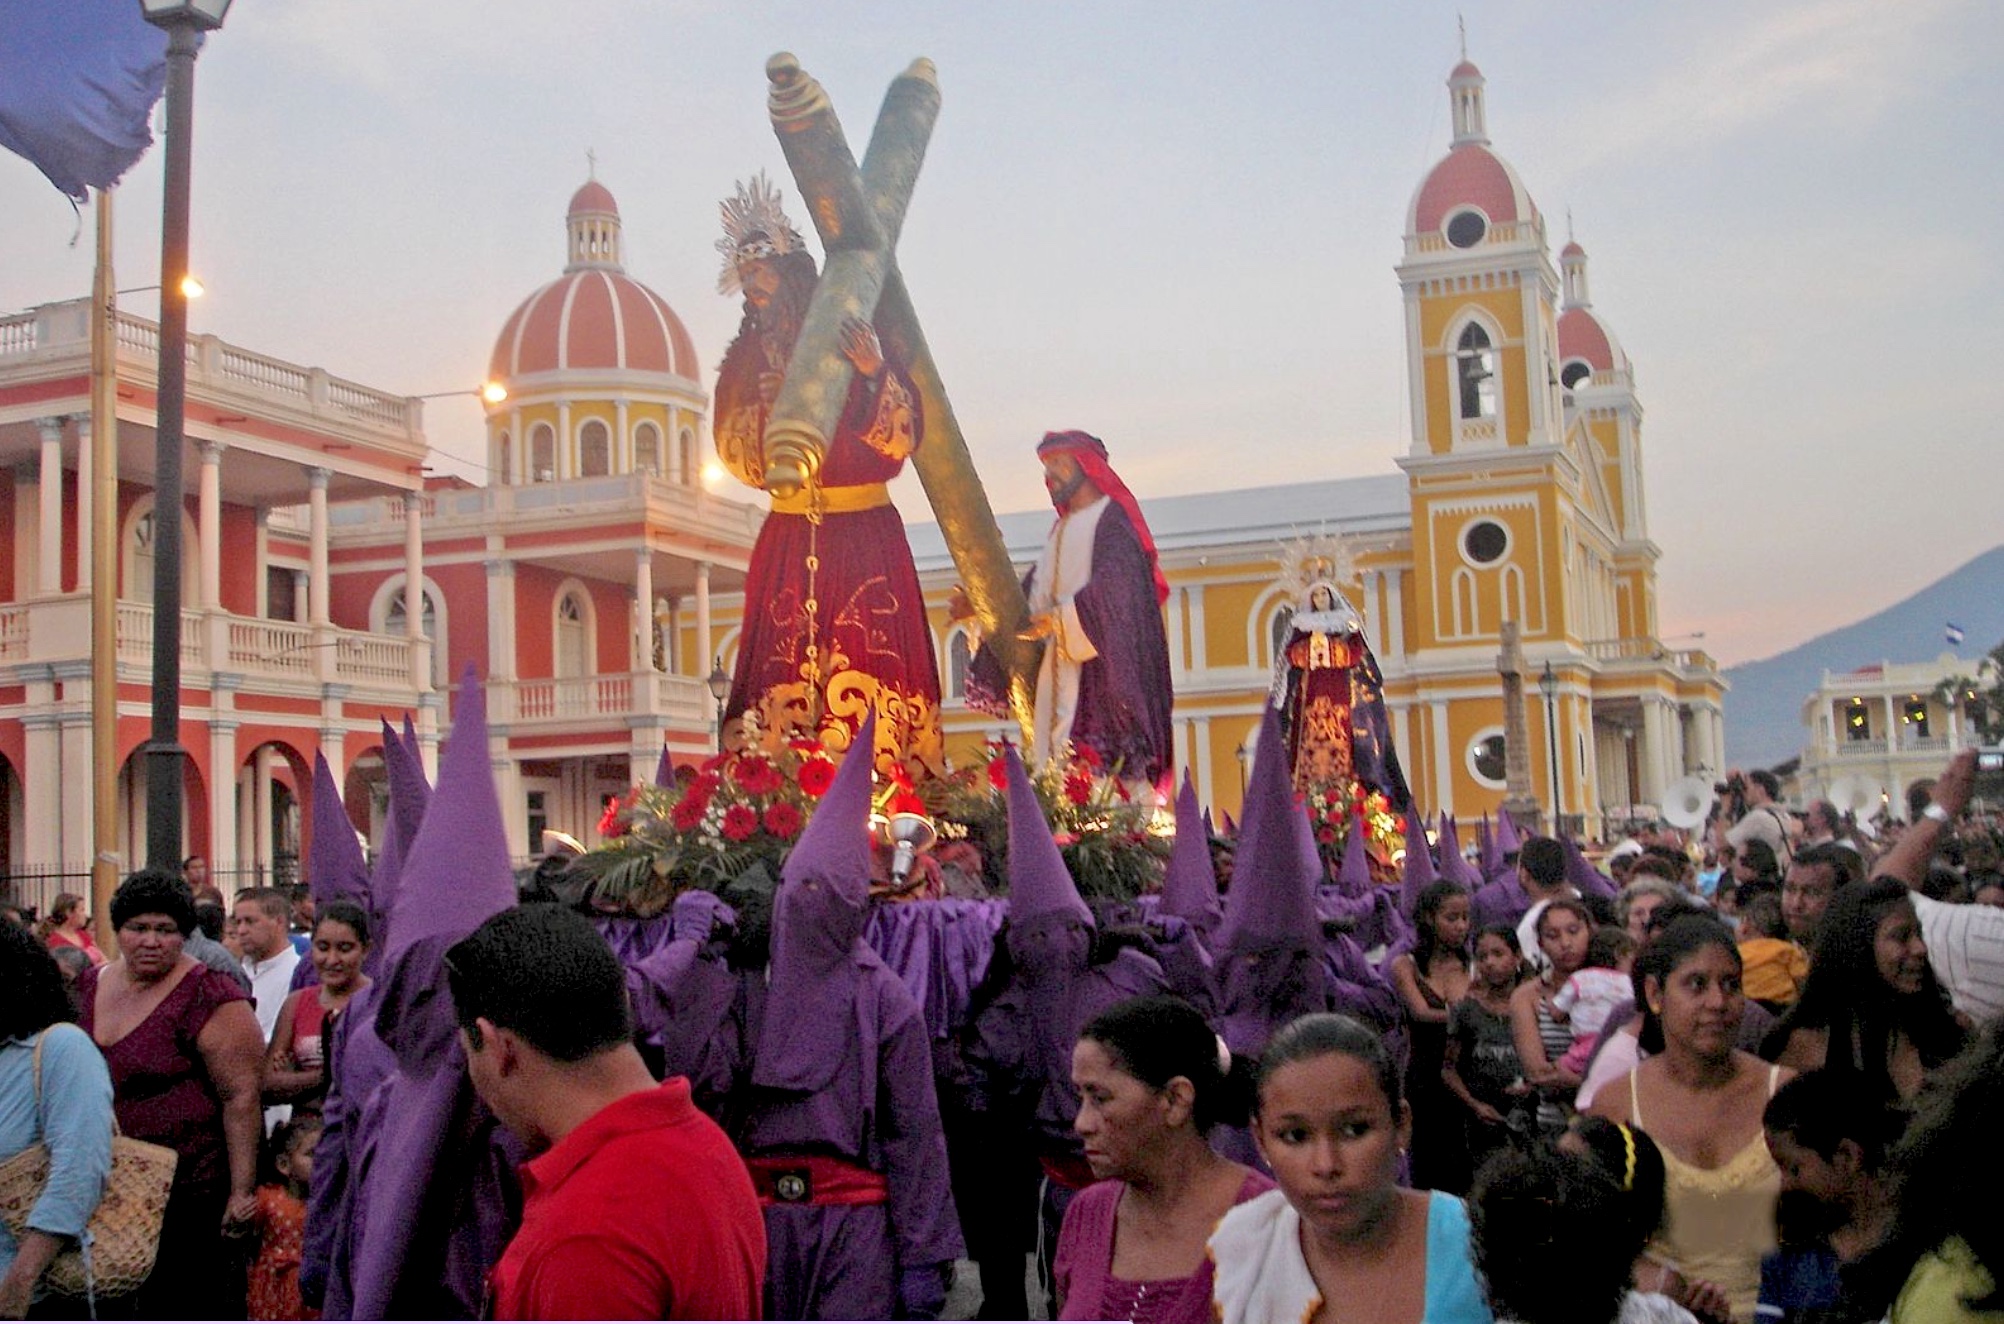 Ortega prohibe en Nicaragua las procesiones de Semana Santa, encarcela a un obispo y a disidentes